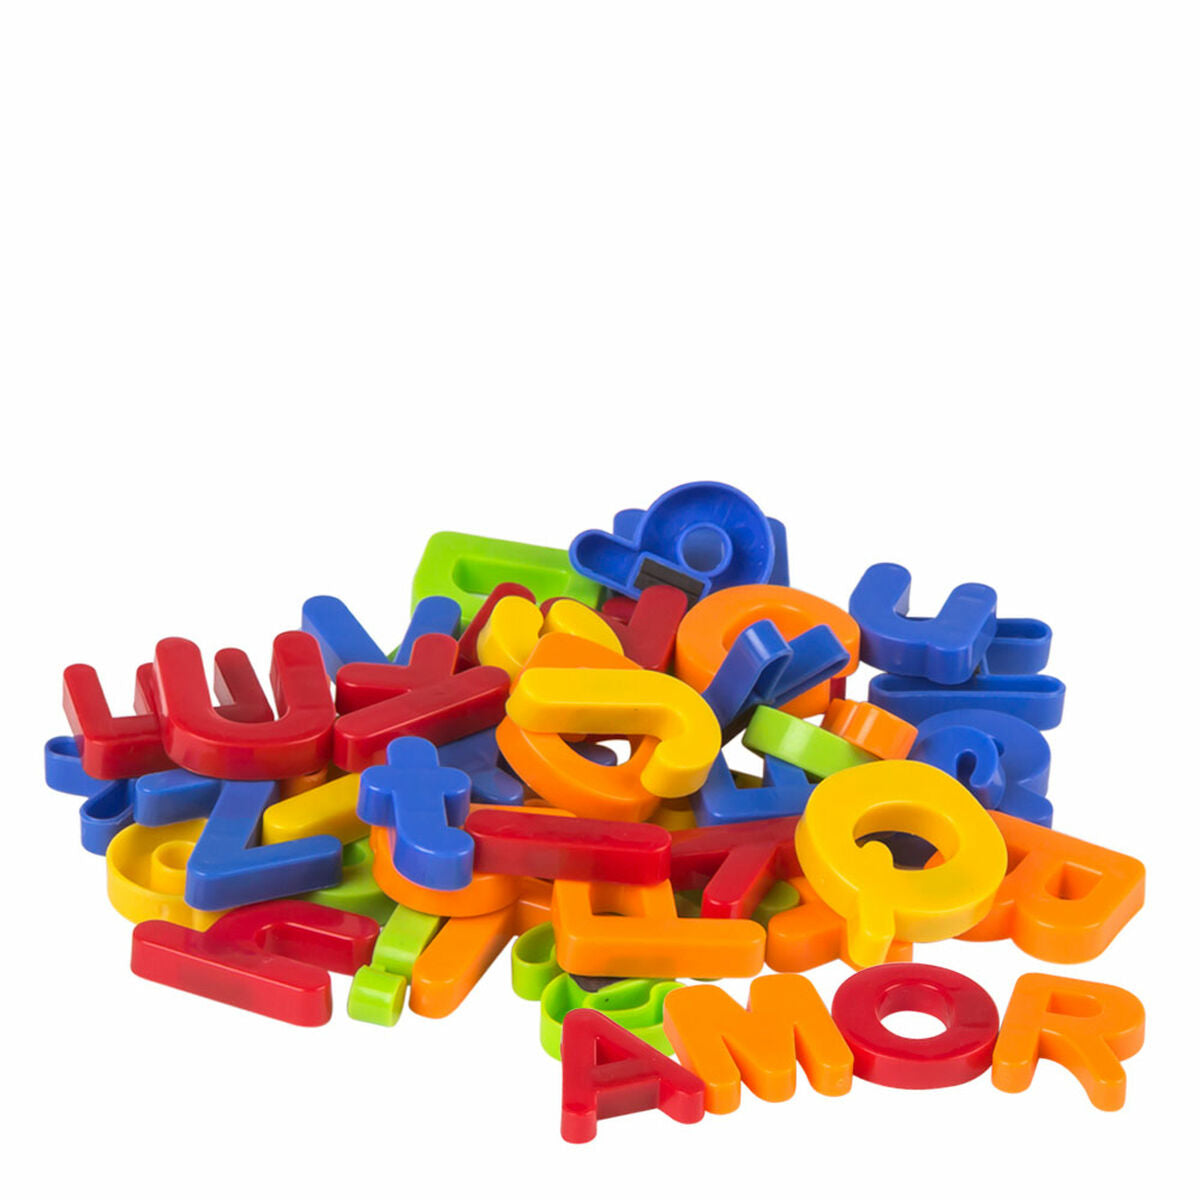 Magnetiskt spel Colorbaby Good idea letras y numeros 2 x 3 x 0,5 cm (12 antal)-Leksaker och spel, Lärande och utbildning-Colorbaby-peaceofhome.se